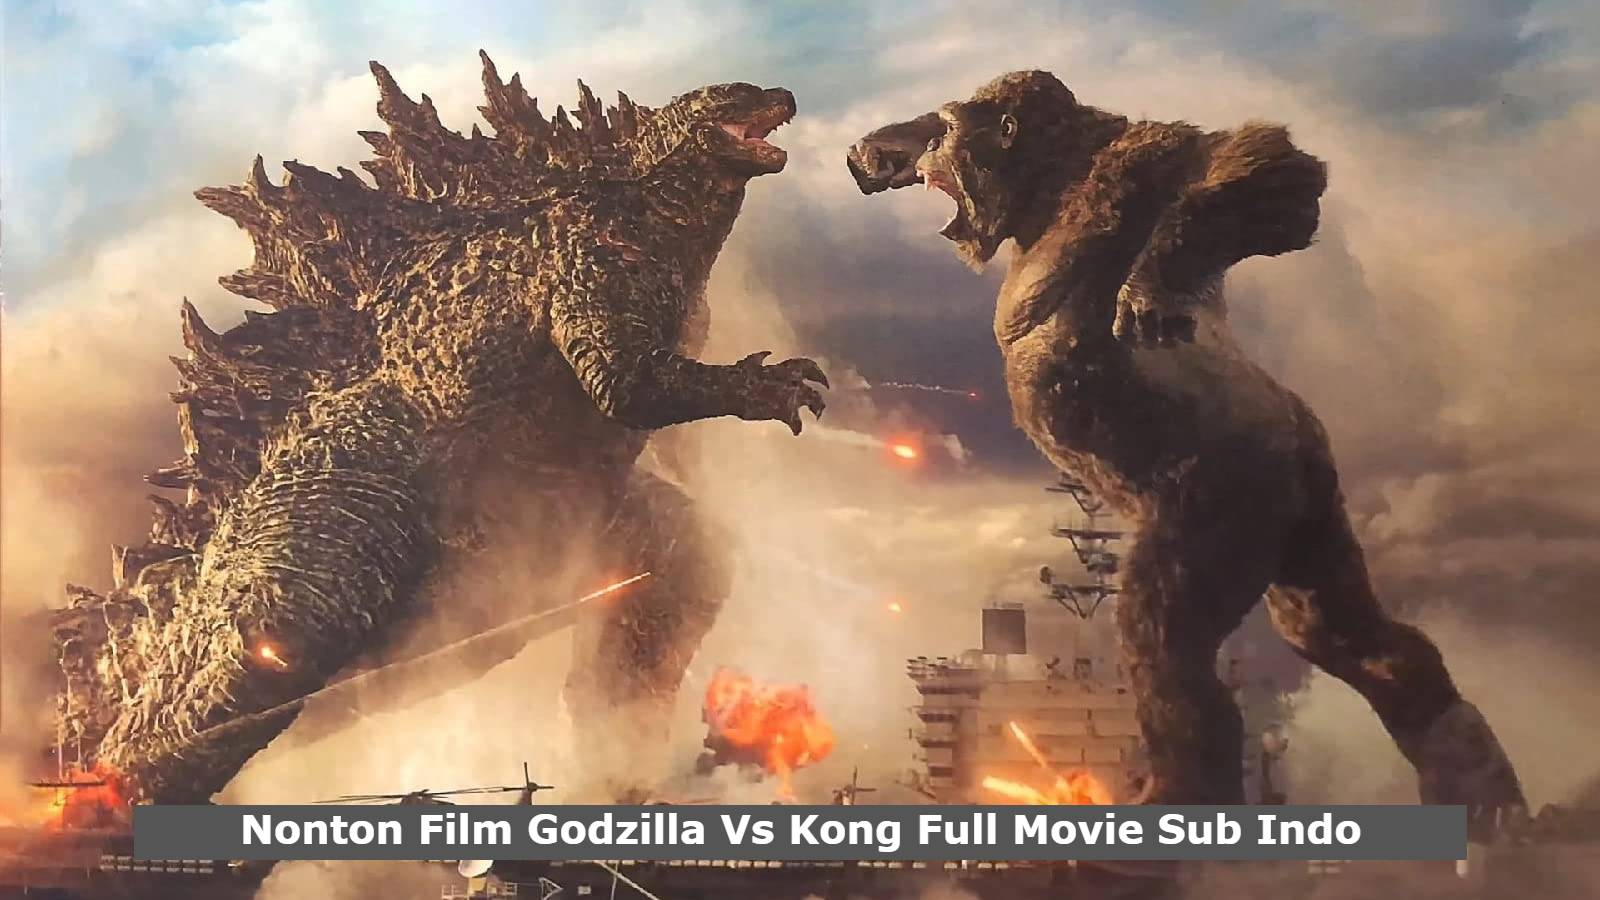 Nonton Film Godzilla Vs Kong Full Movie Sub Indo, Godzilla Vs Kong Full Movie Sub Indo Lk21 Trends